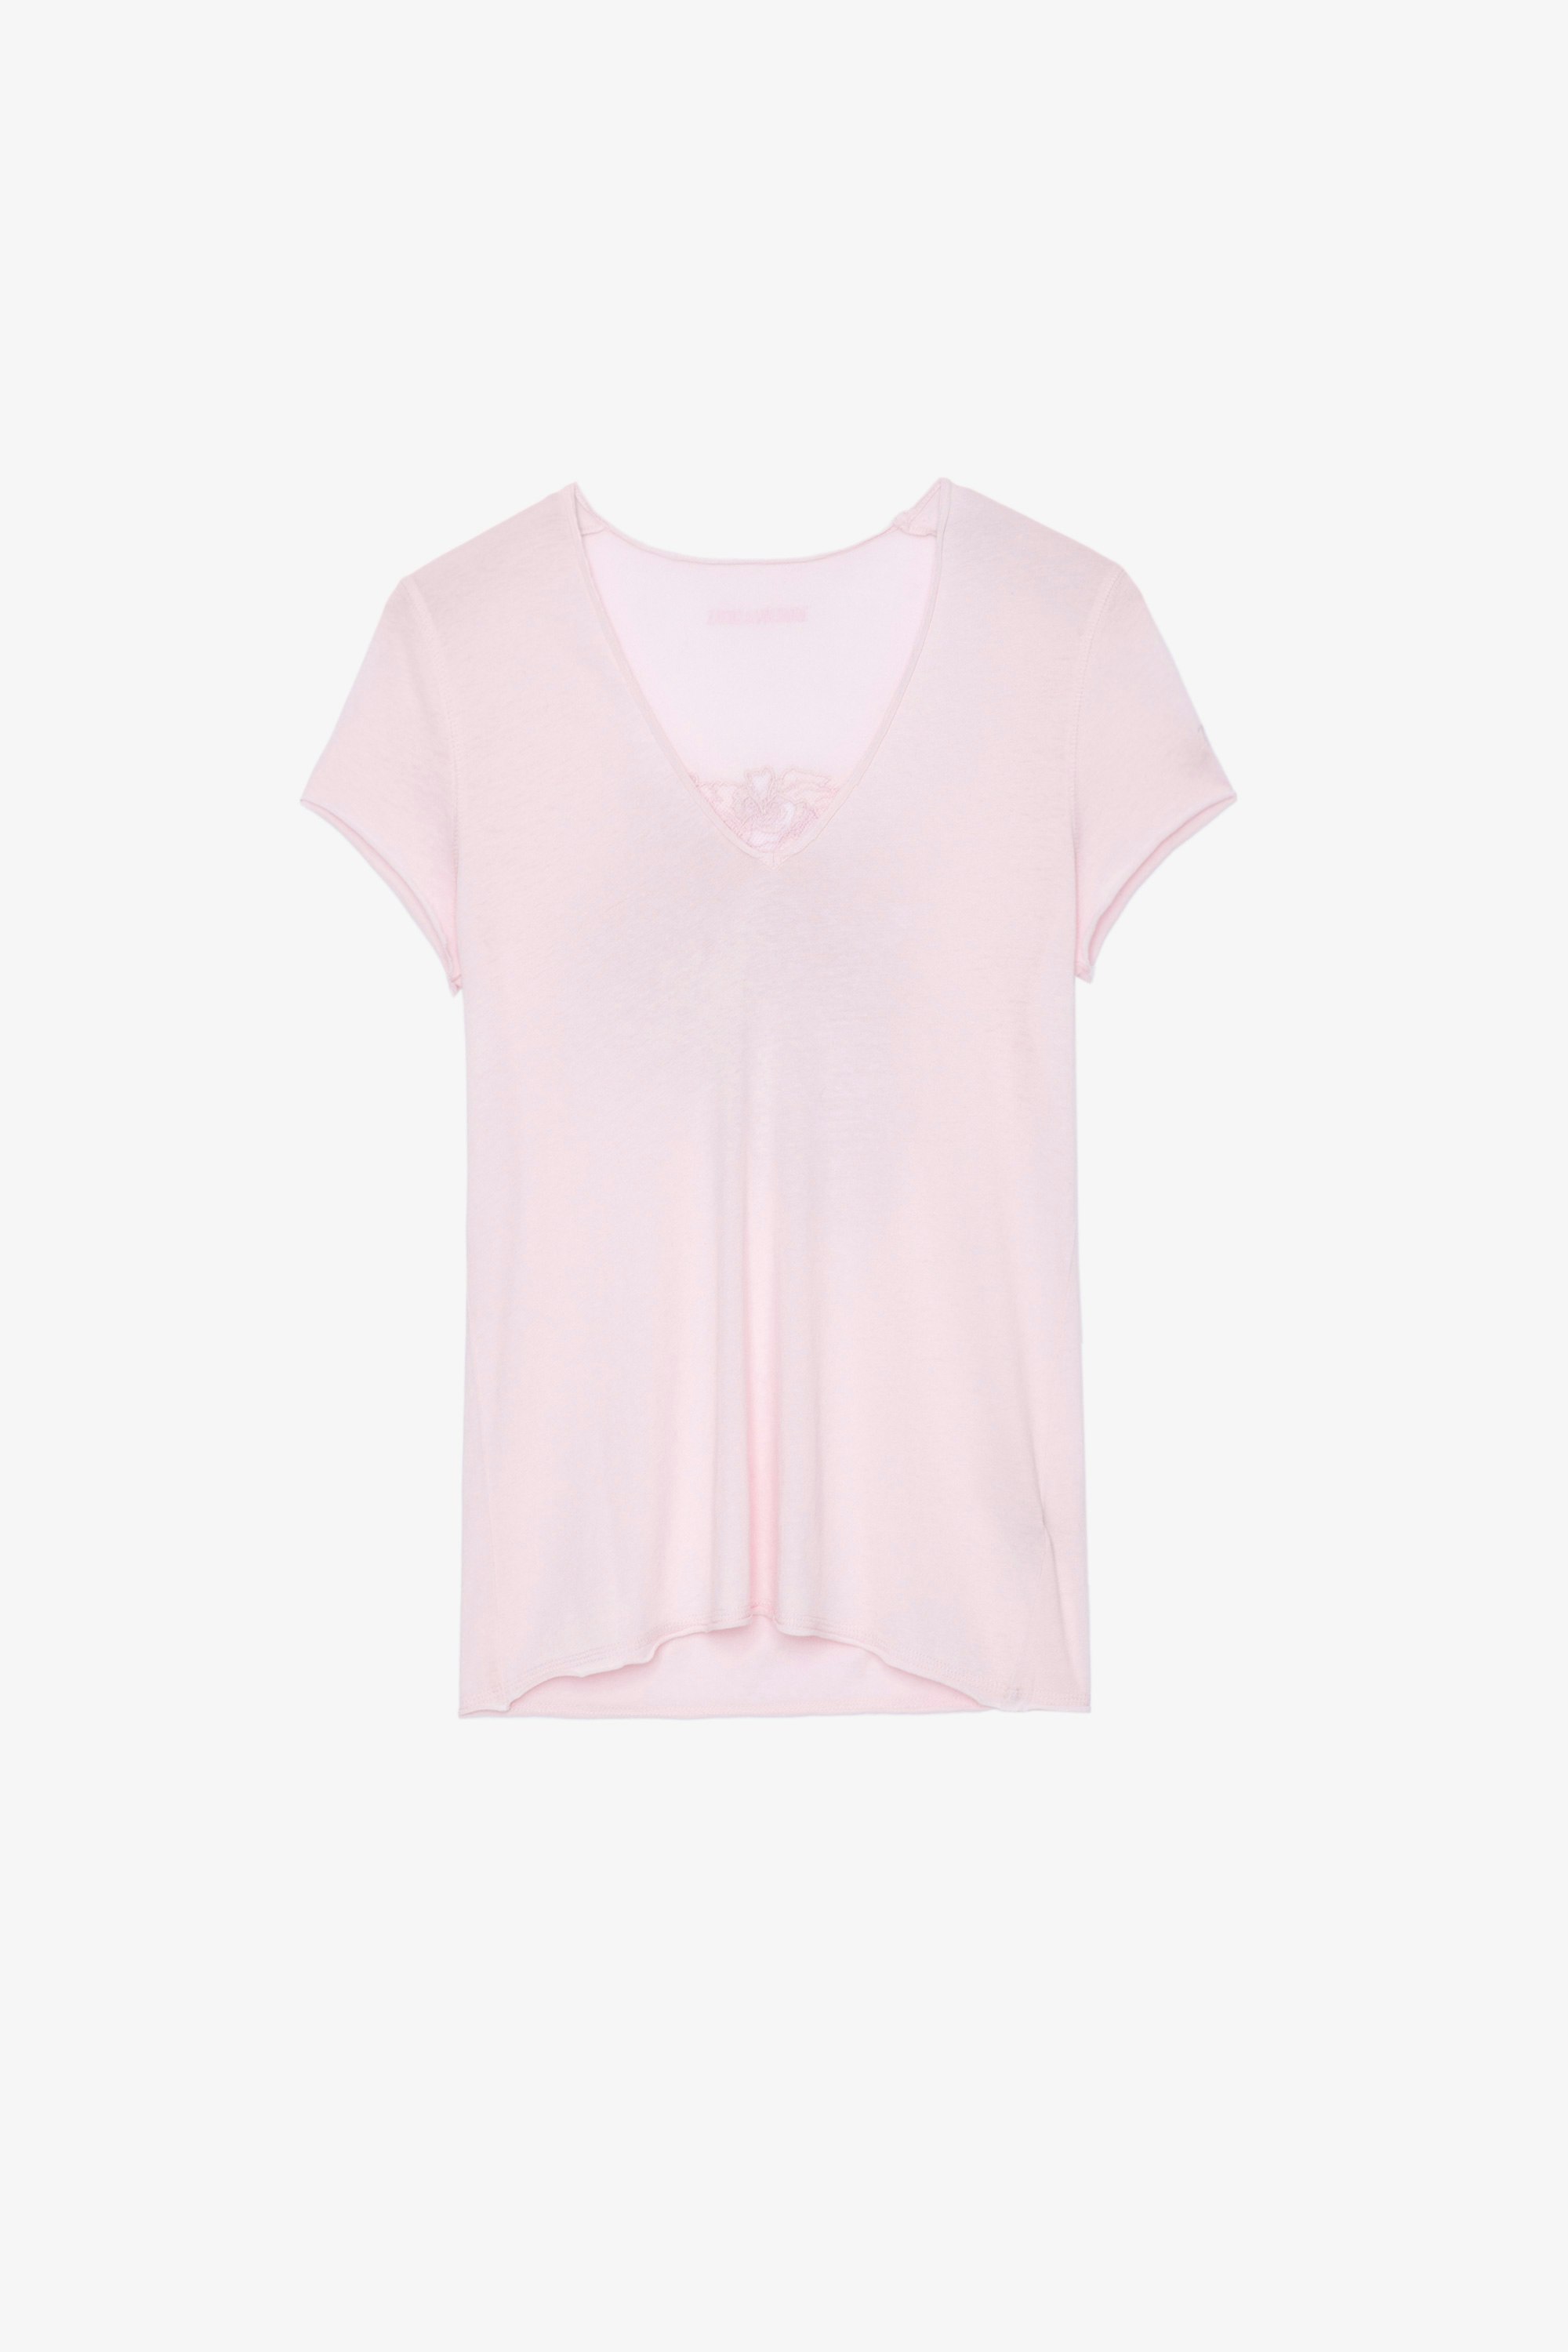 T-Shirt Story Fishnet T-shirt in cotone rosa chiaro decorata con teschio e fiori sulla schiena, Donna